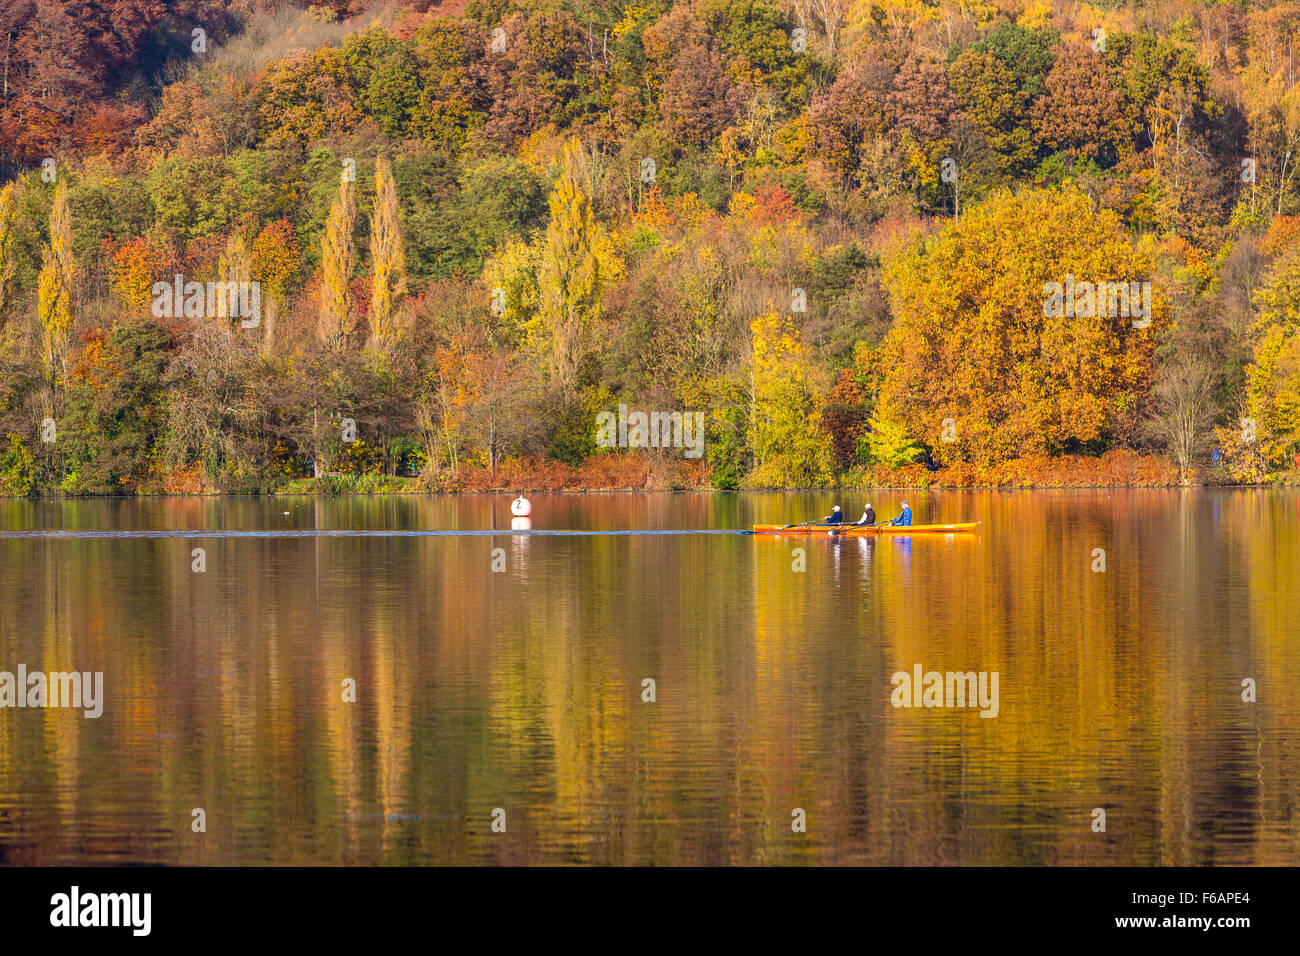 Le lac Baldeneysee, à Essen, Allemagne, automne, arbres en automne les couleurs, châtelet de mine de charbon ancien Carl Funke, rivière Ruhr Banque D'Images